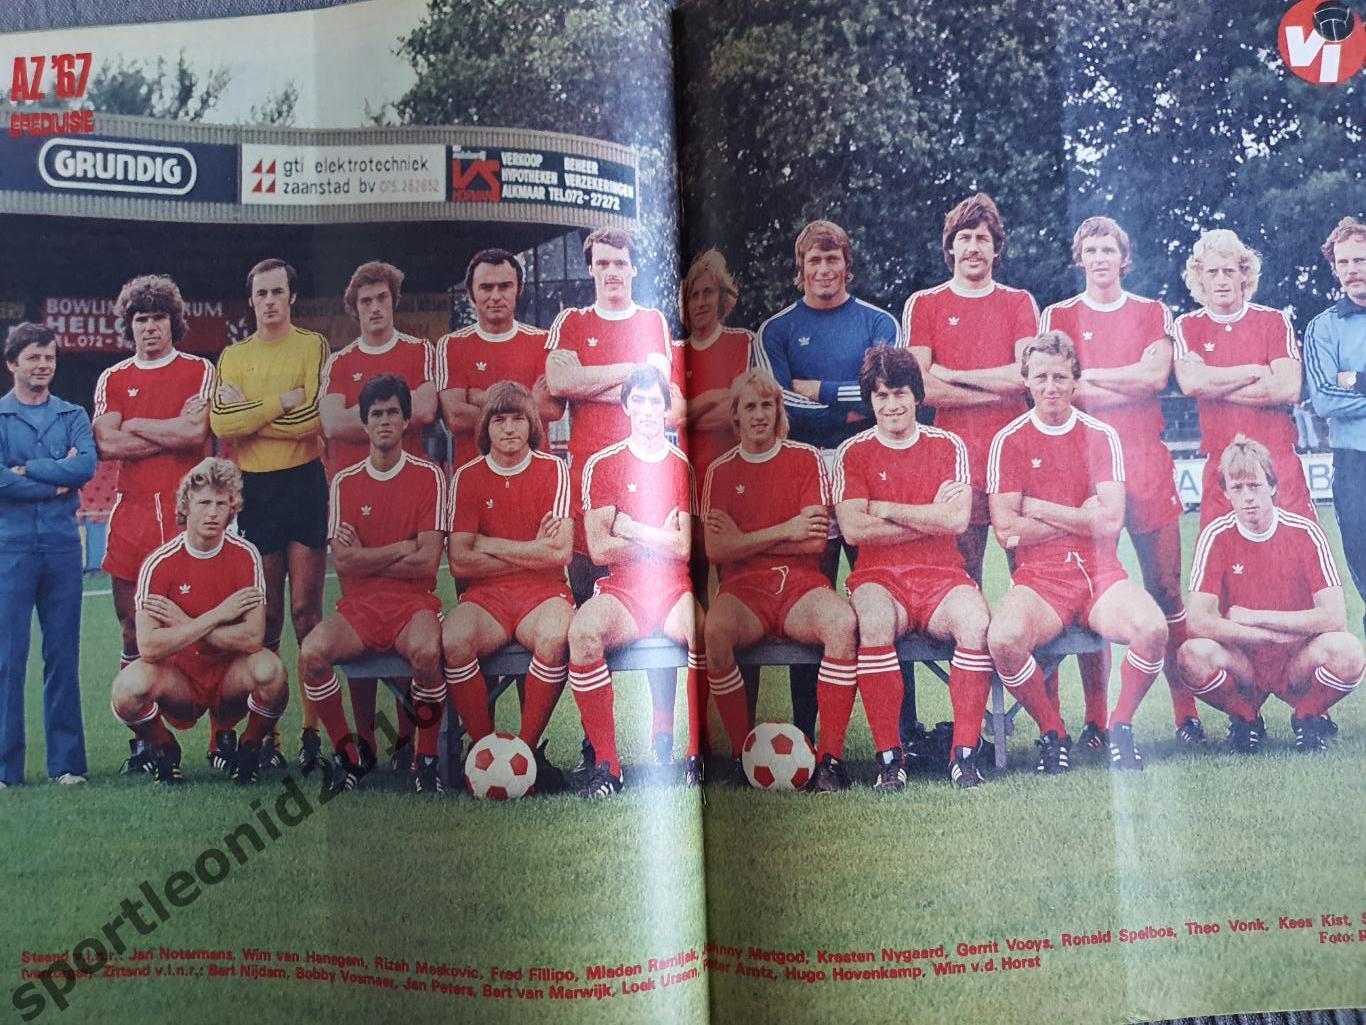 Voetbal International 1977 51 выпуск годовая подписка .3 6